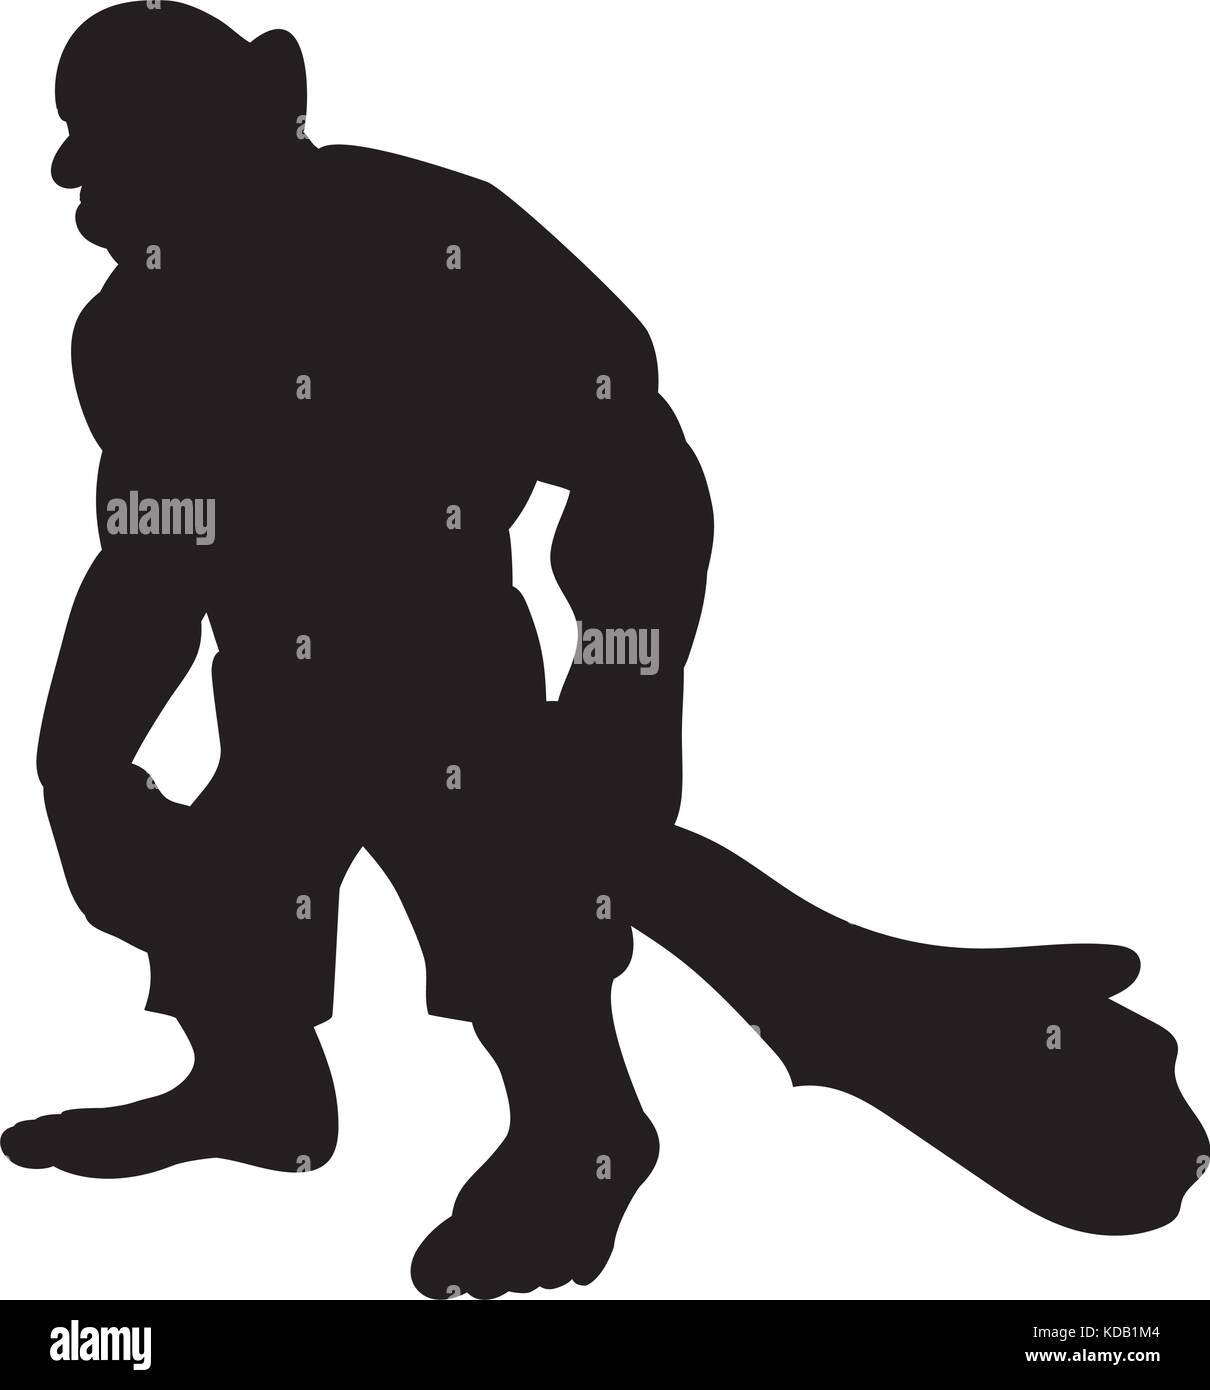 Giant person silhouette monster villain fantasy. Vector illustration. Stock Vector